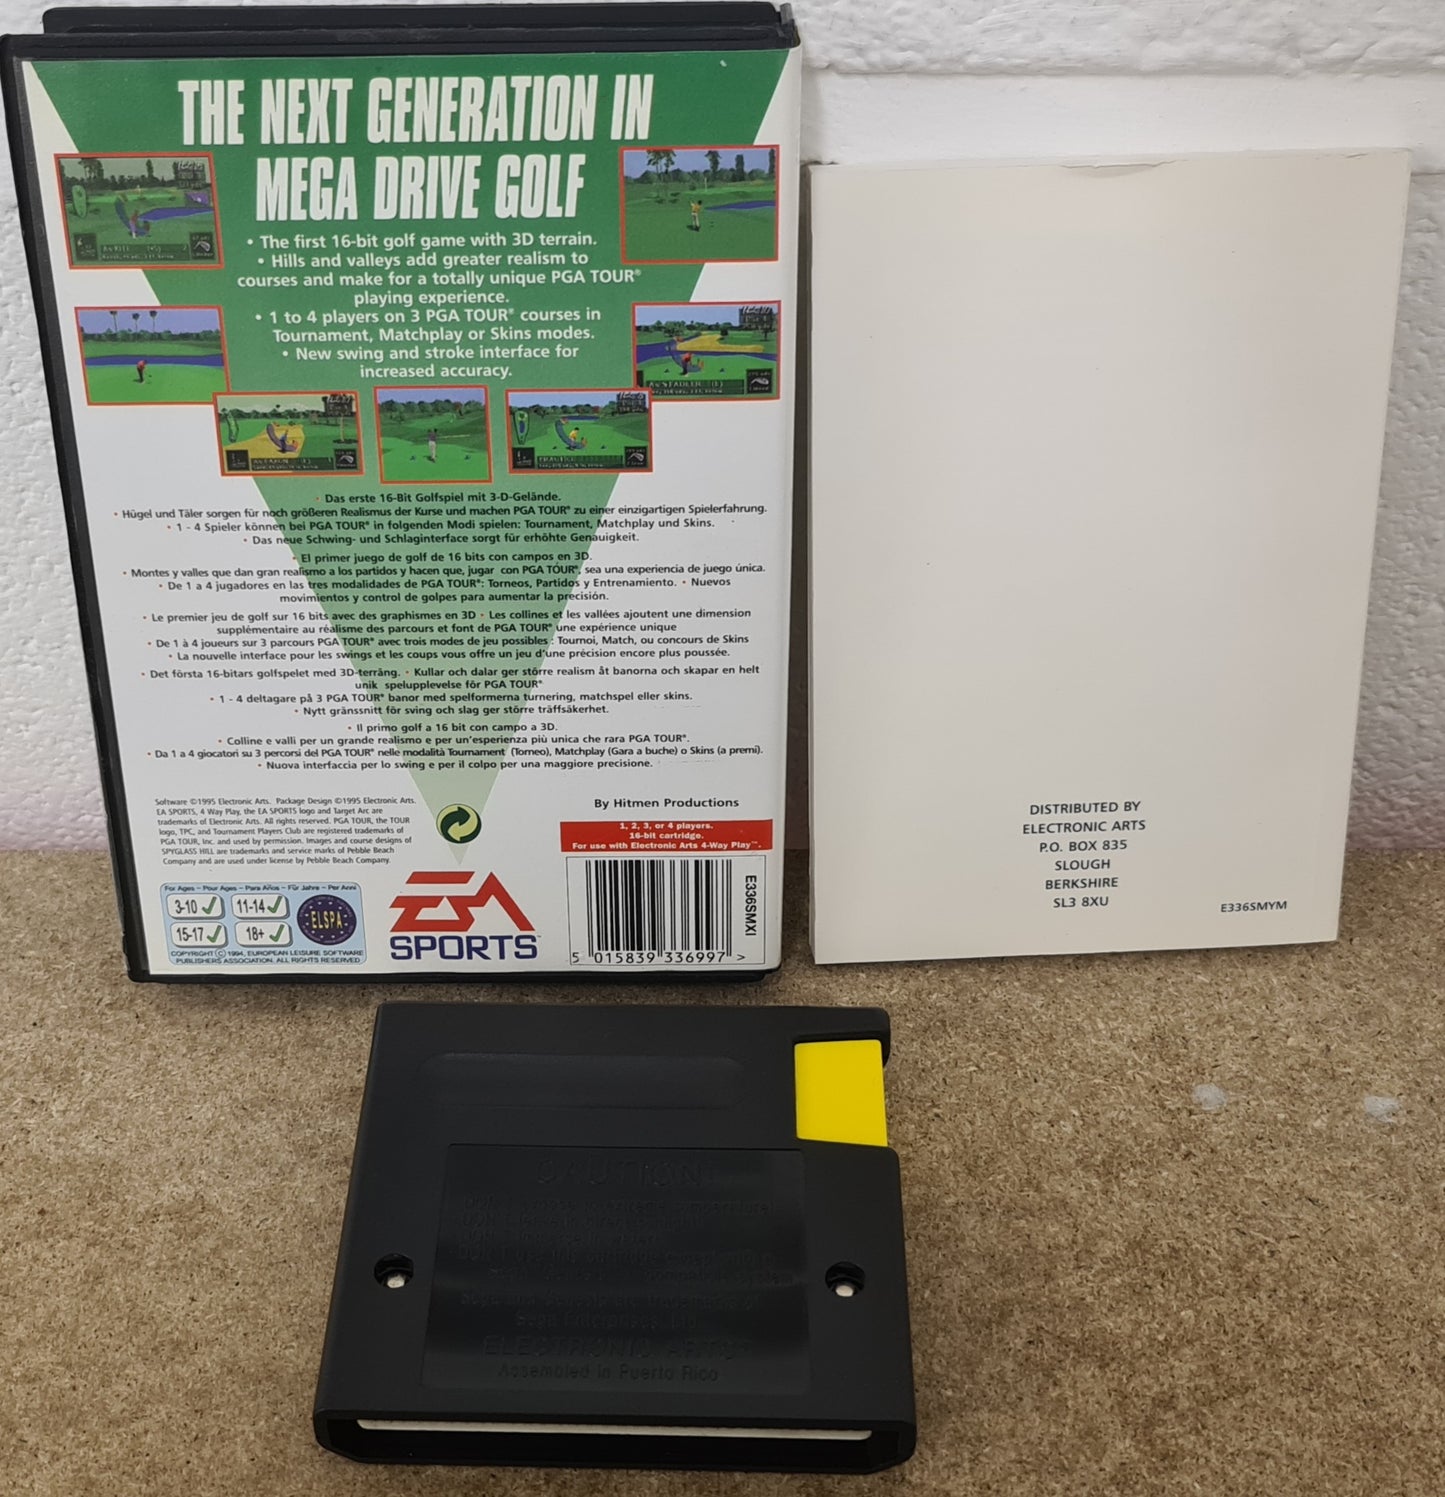 PGA Tour 96 Sega Mega Drive Game